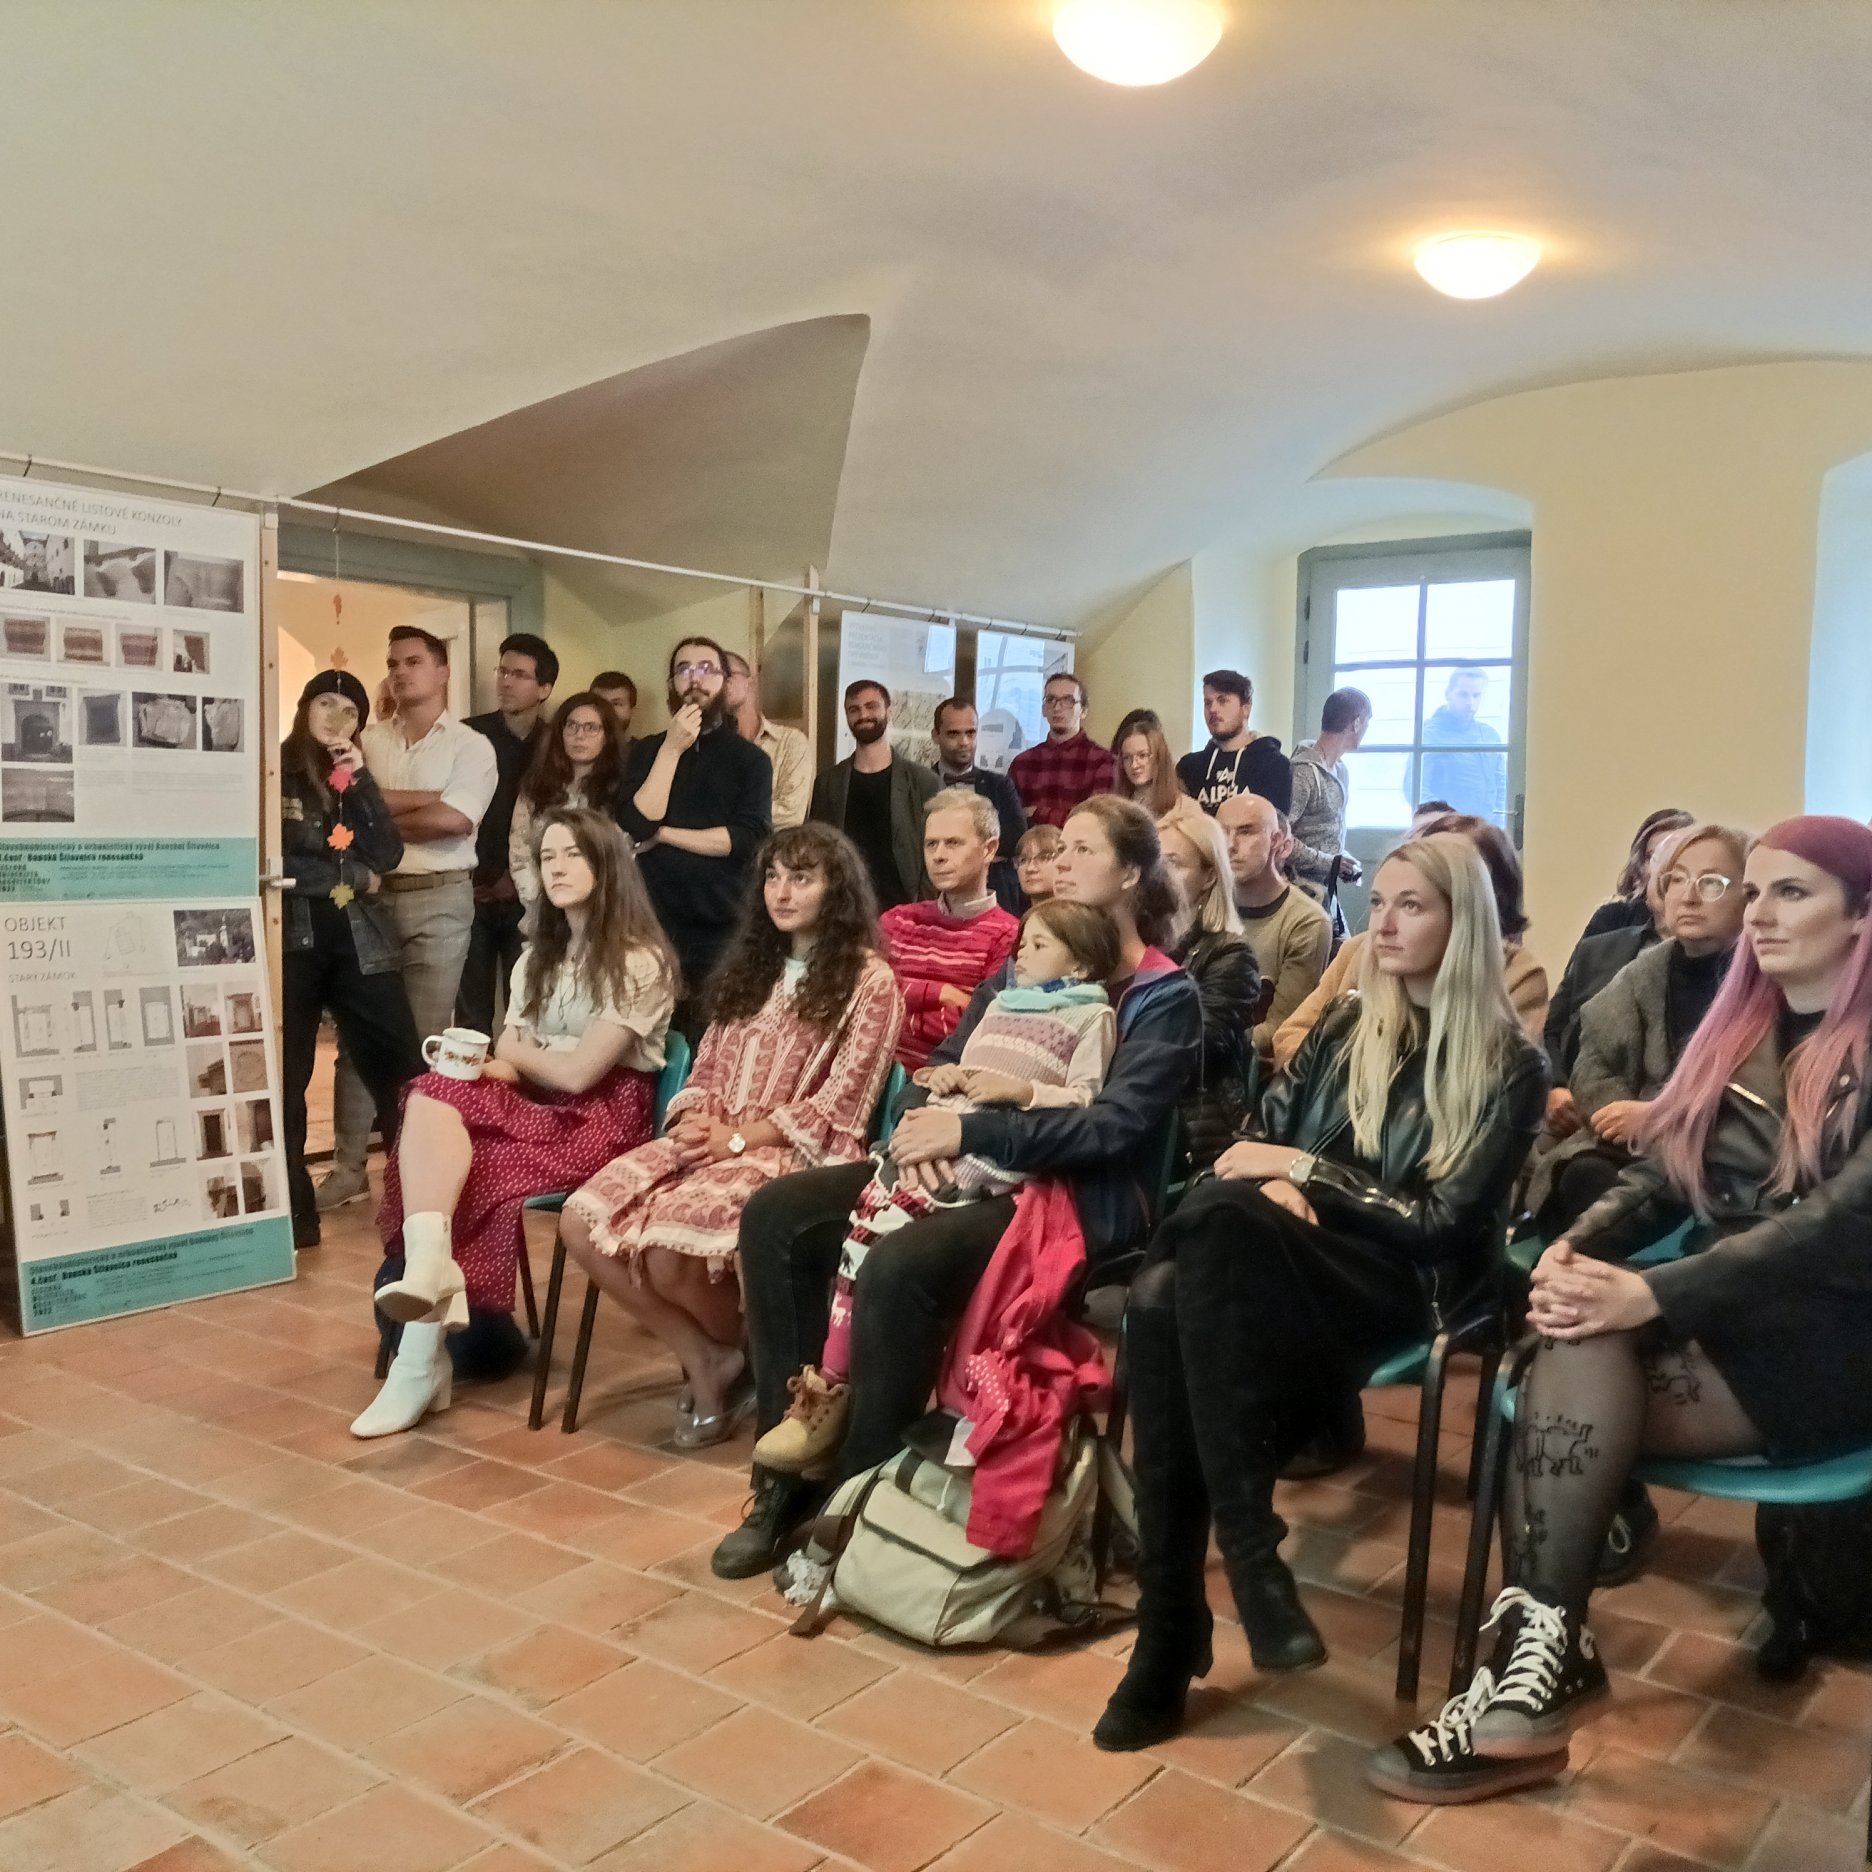 Výstava Banská Štiavnica renesančná a prezentácia výsledkov výskumu